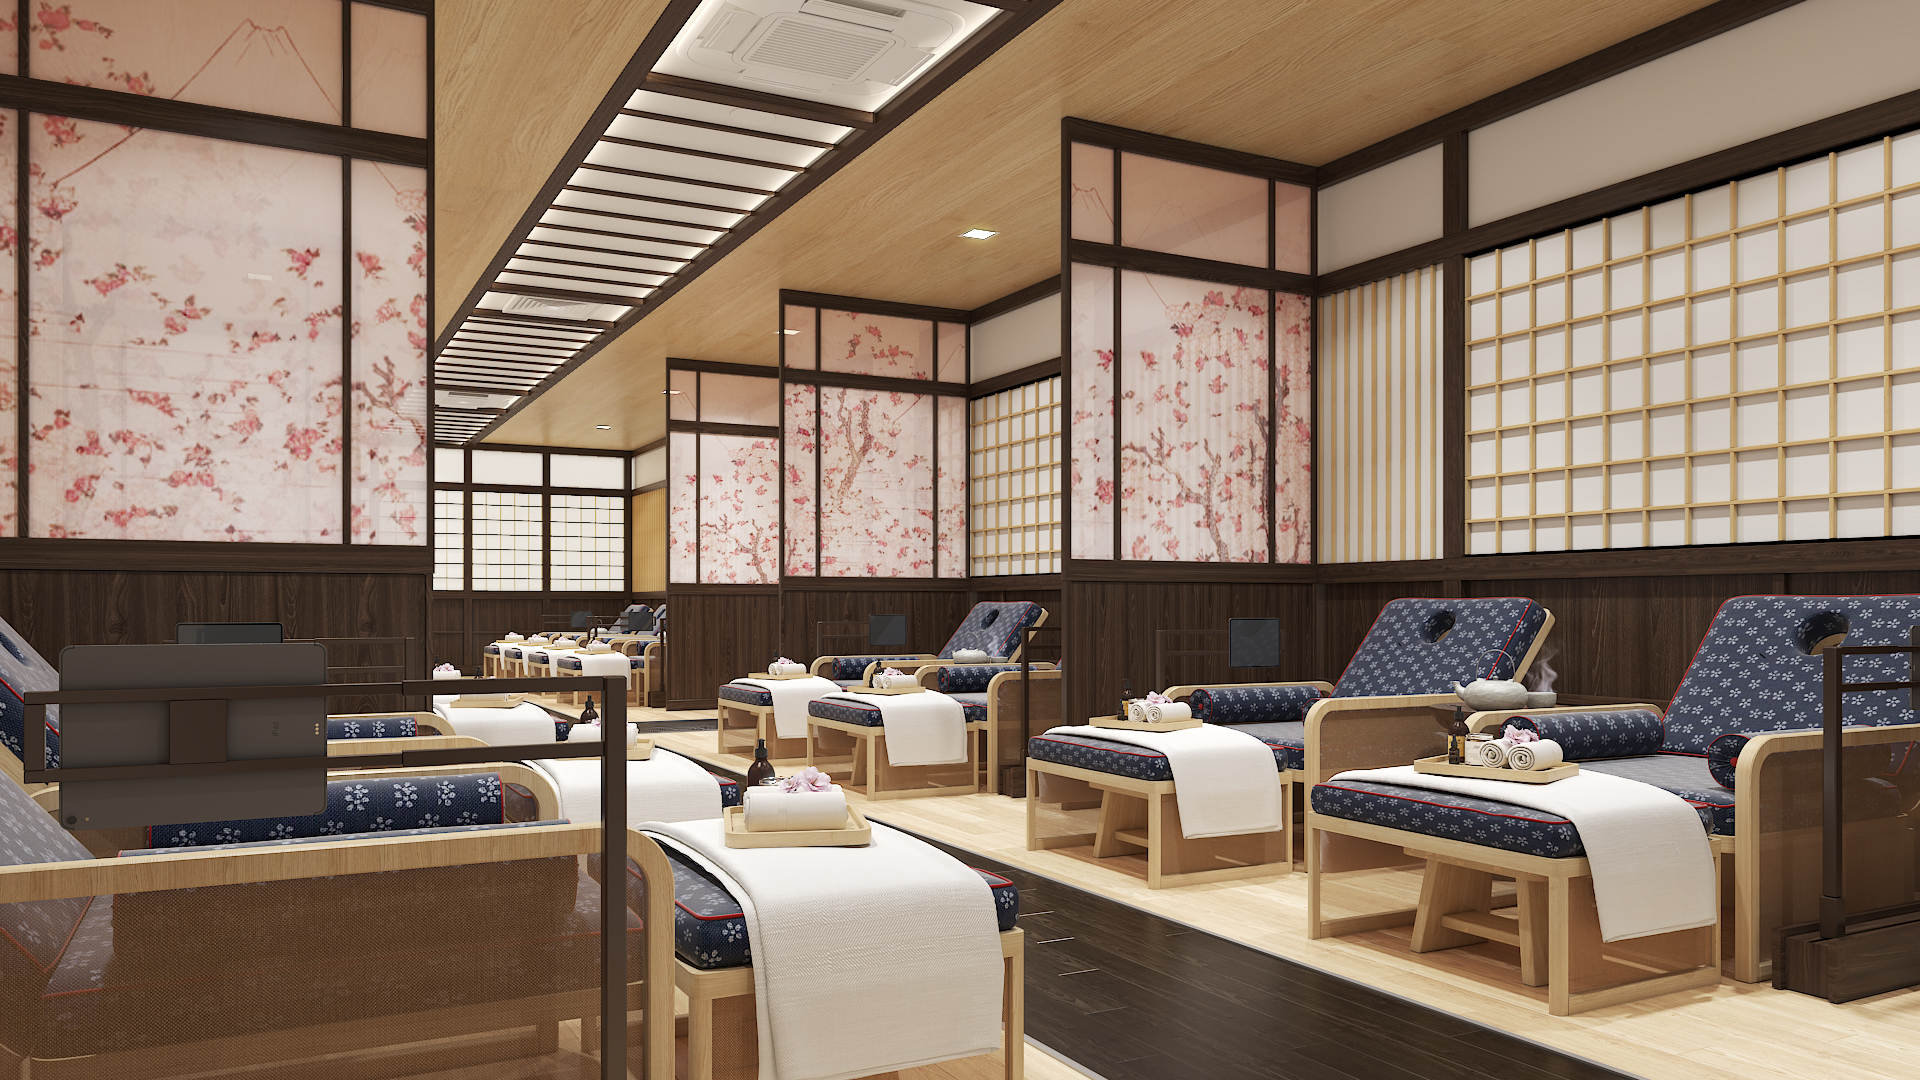 Tắm khoáng Onsen tại Thanh Thủy sẽ được phục vụ những tiện nghi chuẩn Nhật